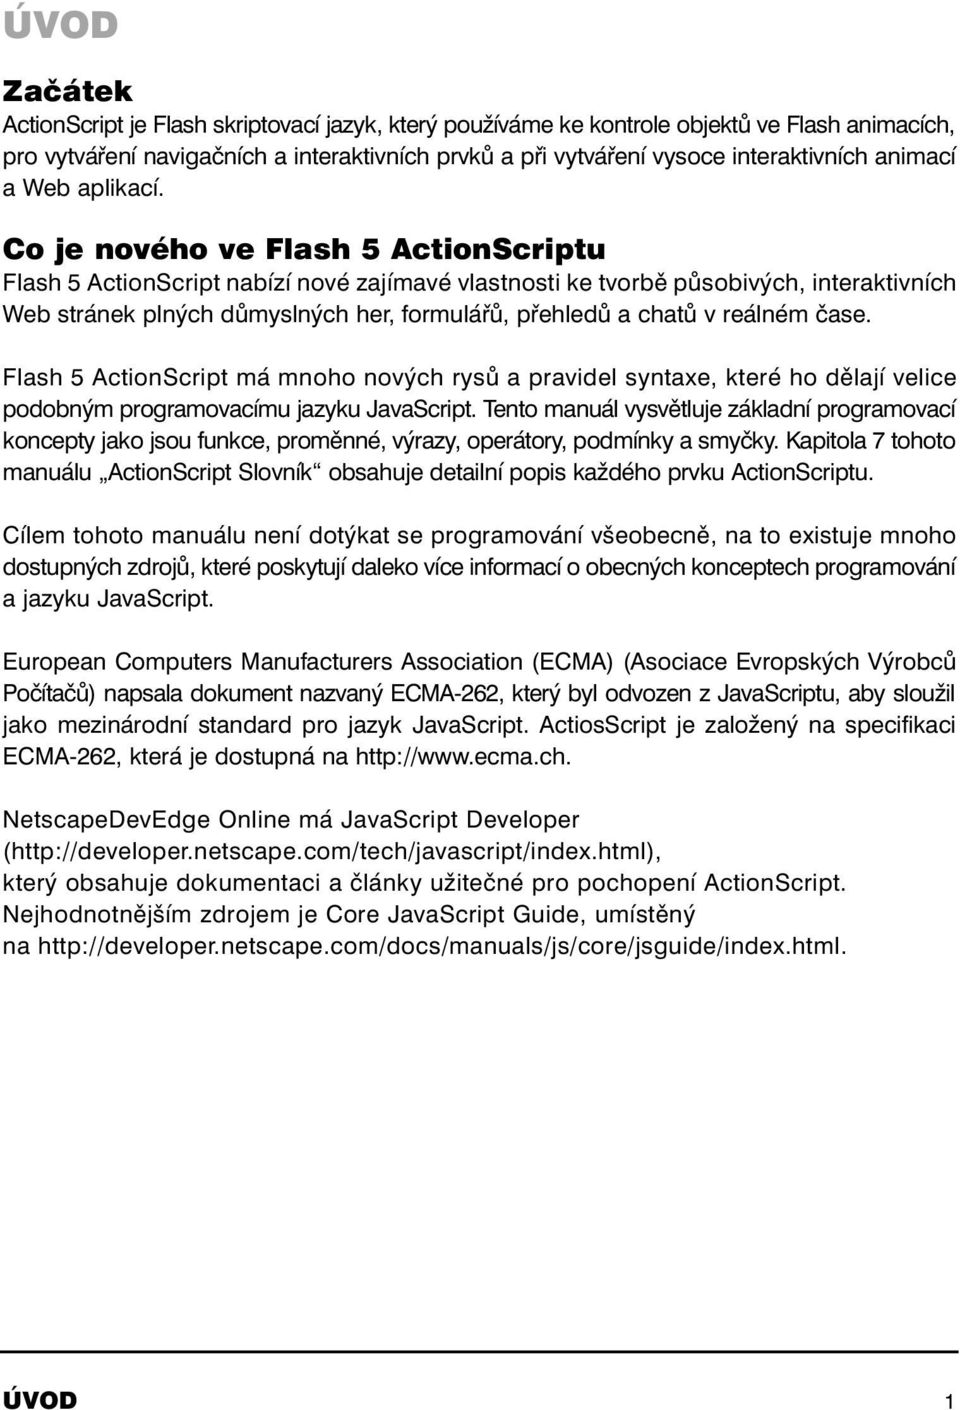 Co je nového ve Flash 5 ActionScriptu Flash 5 ActionScript nabízí nové zajímavé vlastnosti ke tvorbě působivých, interaktivních Web stránek plných důmyslných her, formulářů, přehledů a chatů v